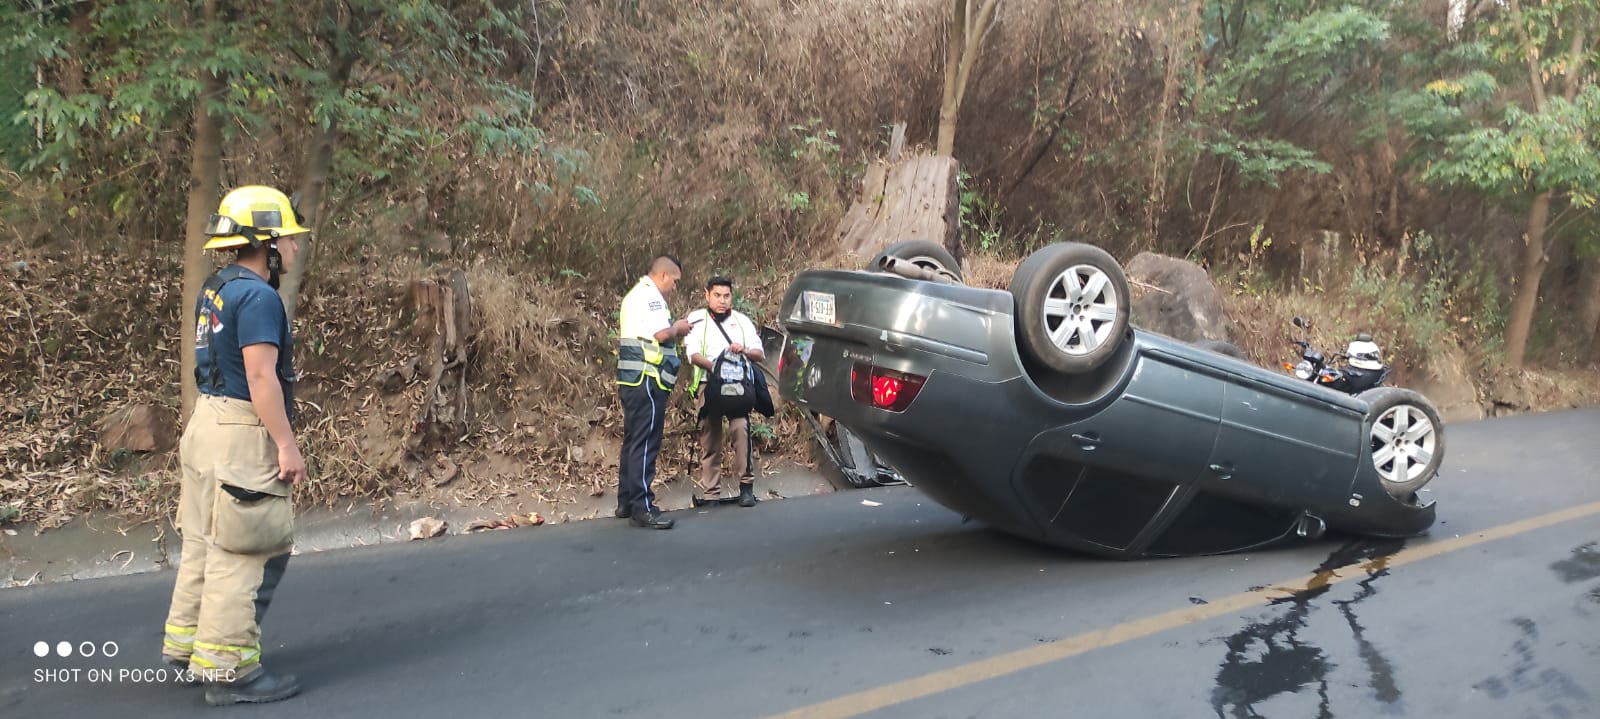 Vuelca automóvil en la subida a Santa María, no hay lesionados